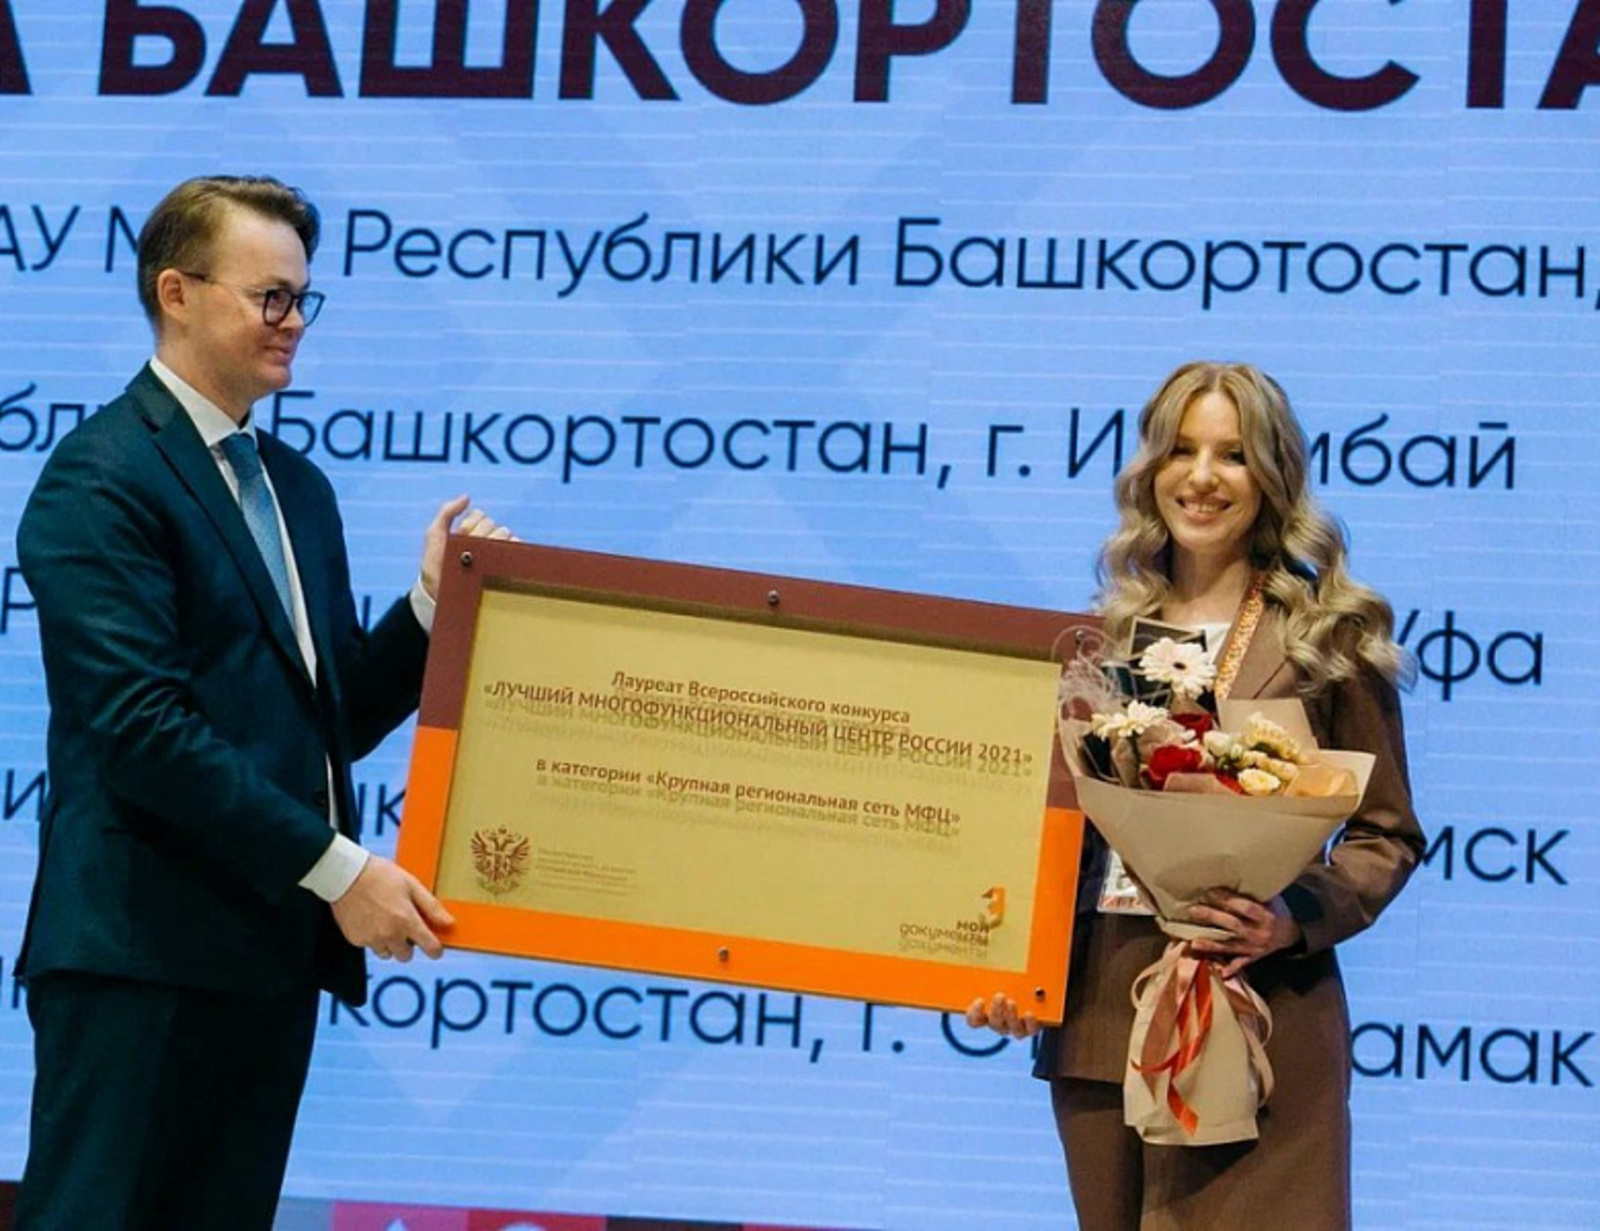 МФЦ Башкирии признан лучшей крупной региональной сетью в стране